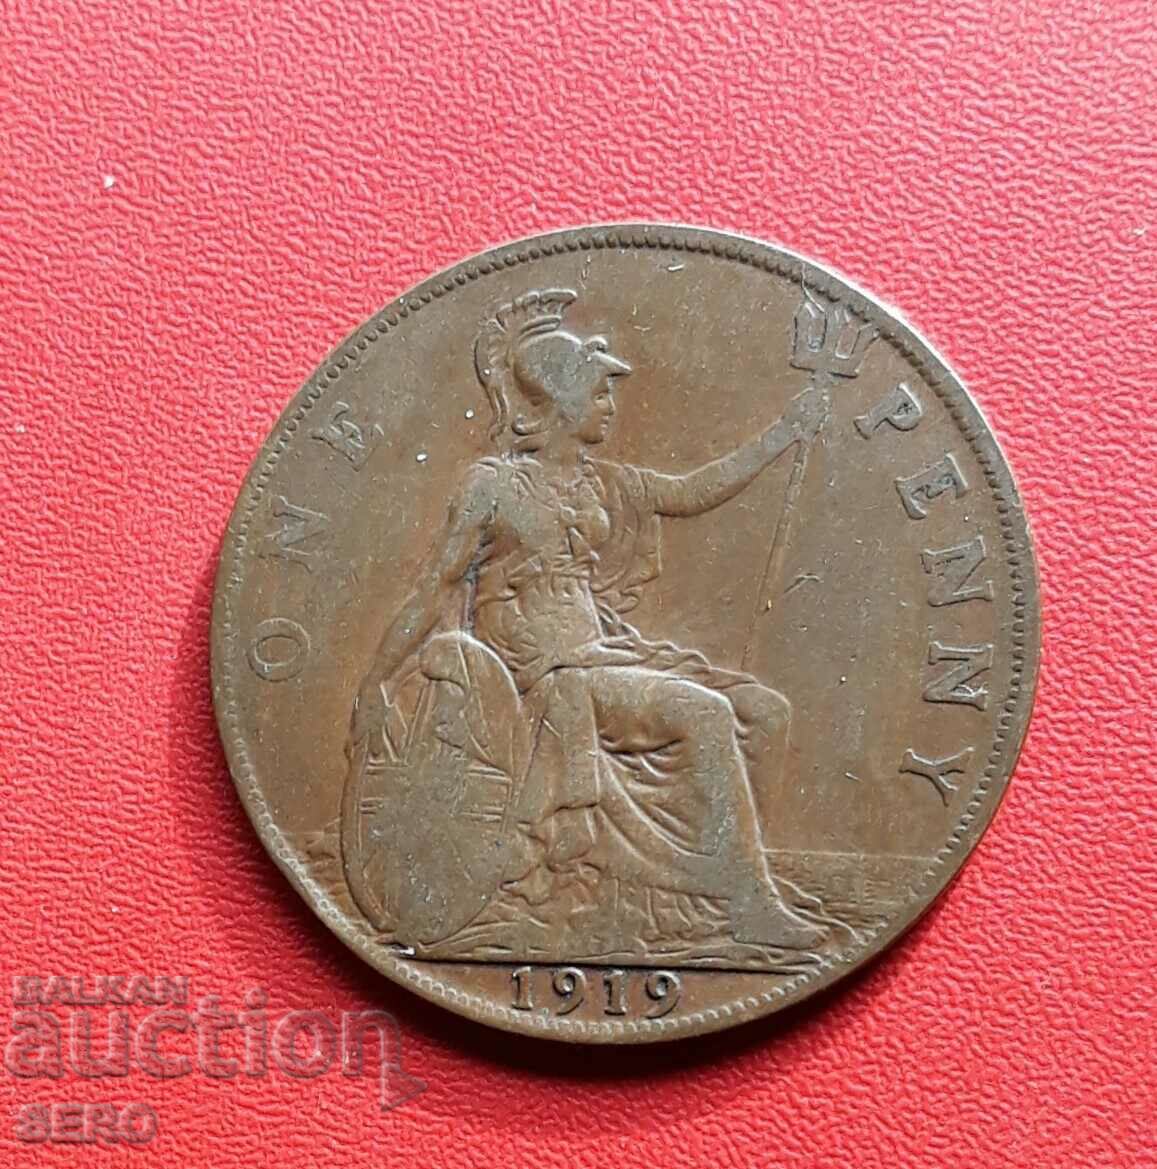 Marea Britanie - 1 penny 1919